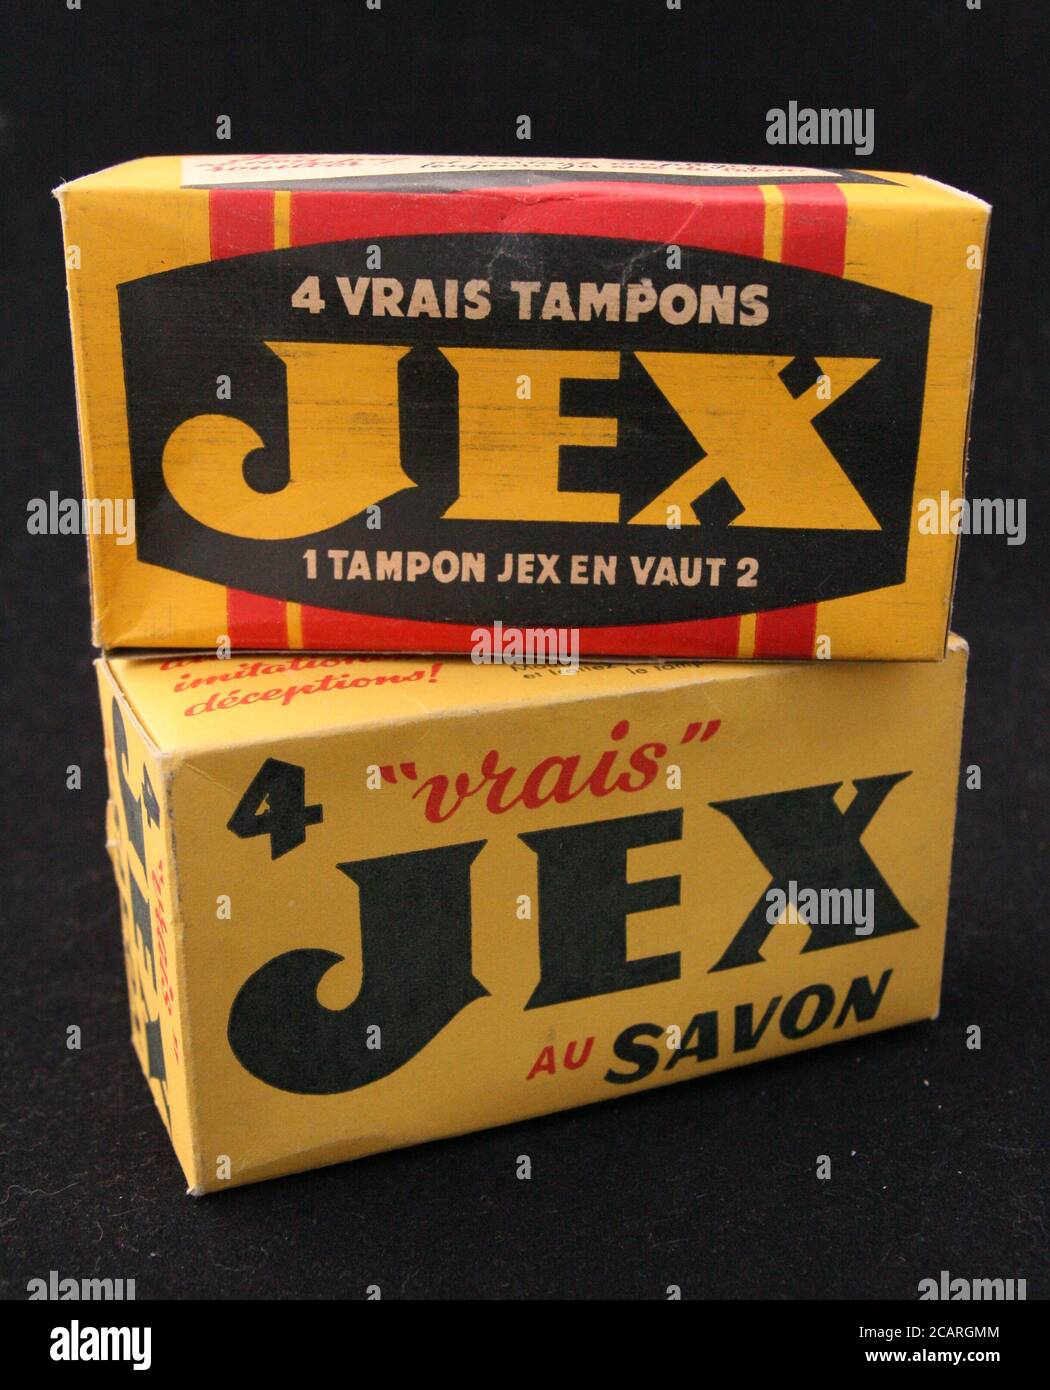 Publicité tampon Jex - 1983 